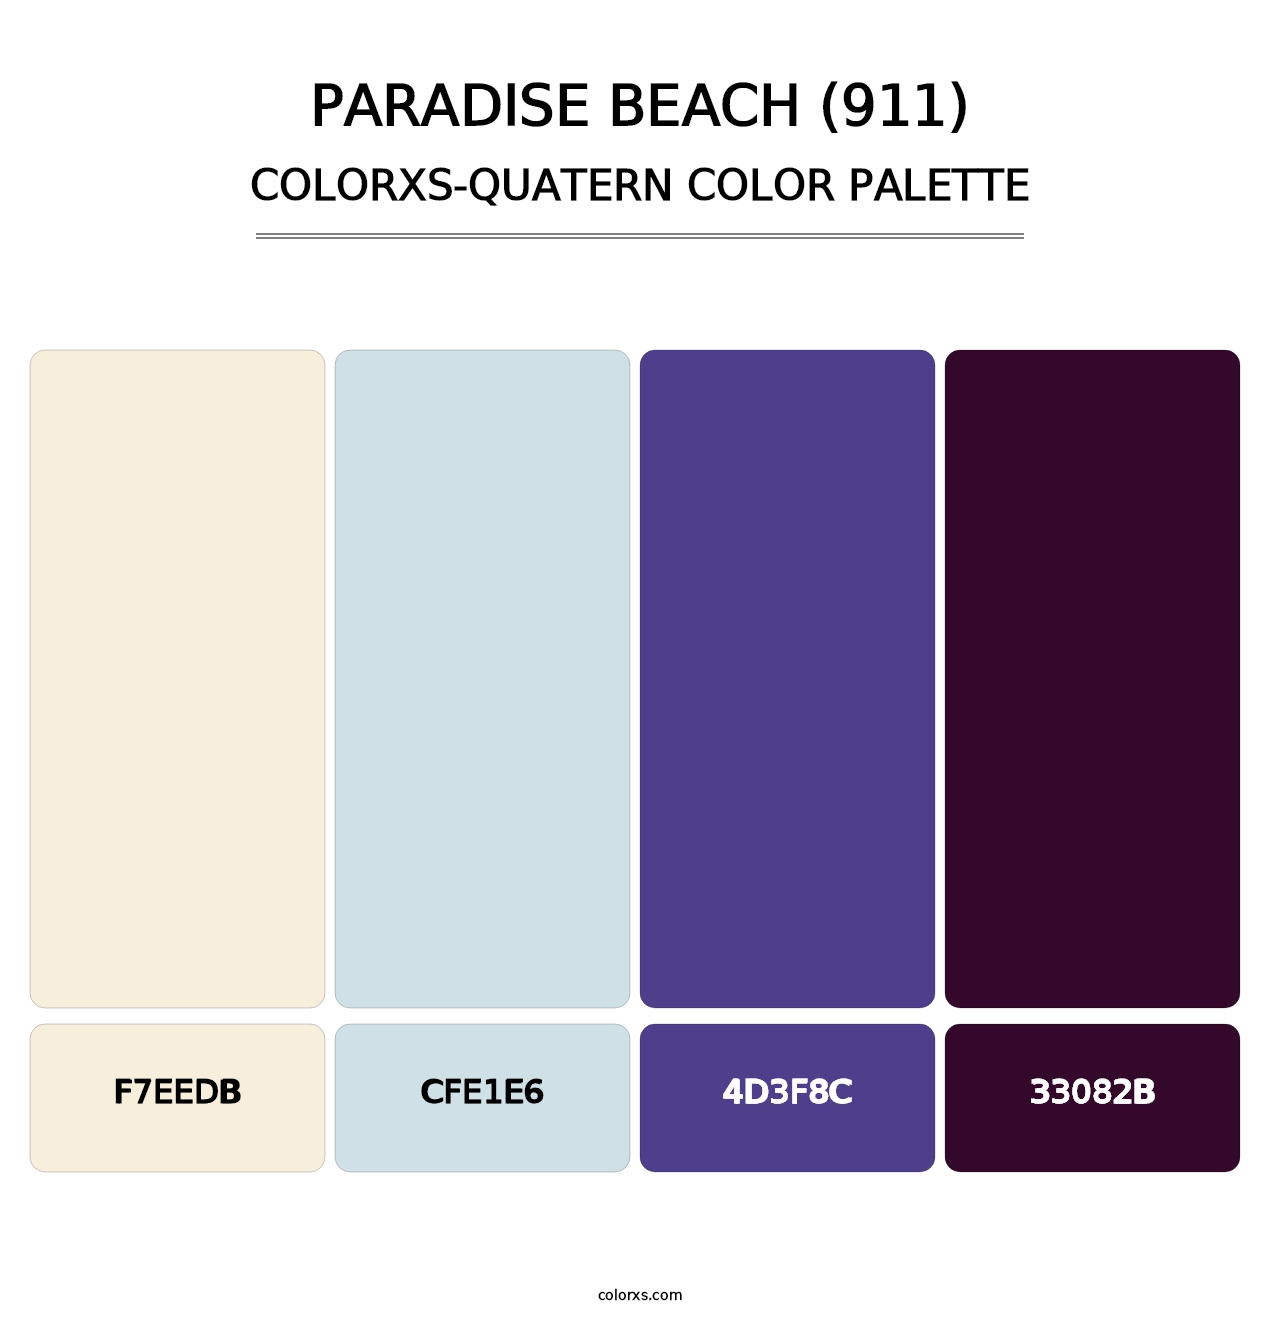 Paradise Beach (911) - Colorxs Quatern Palette